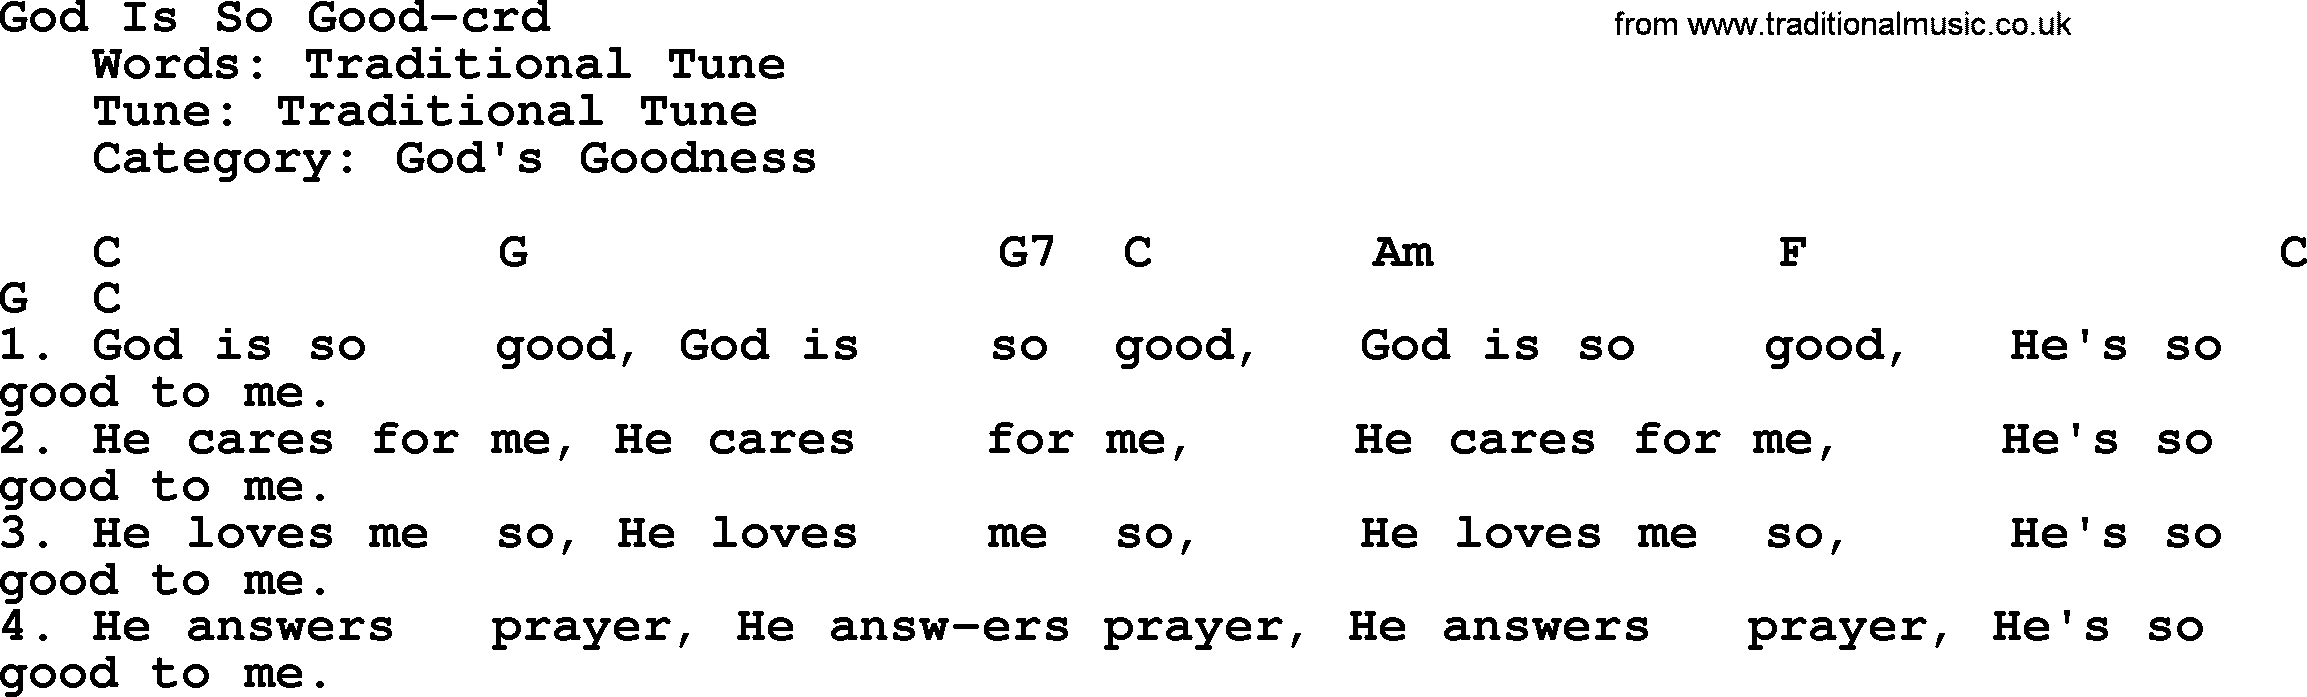 Top 500 Hymn: God Is So Good, lyrics and chords